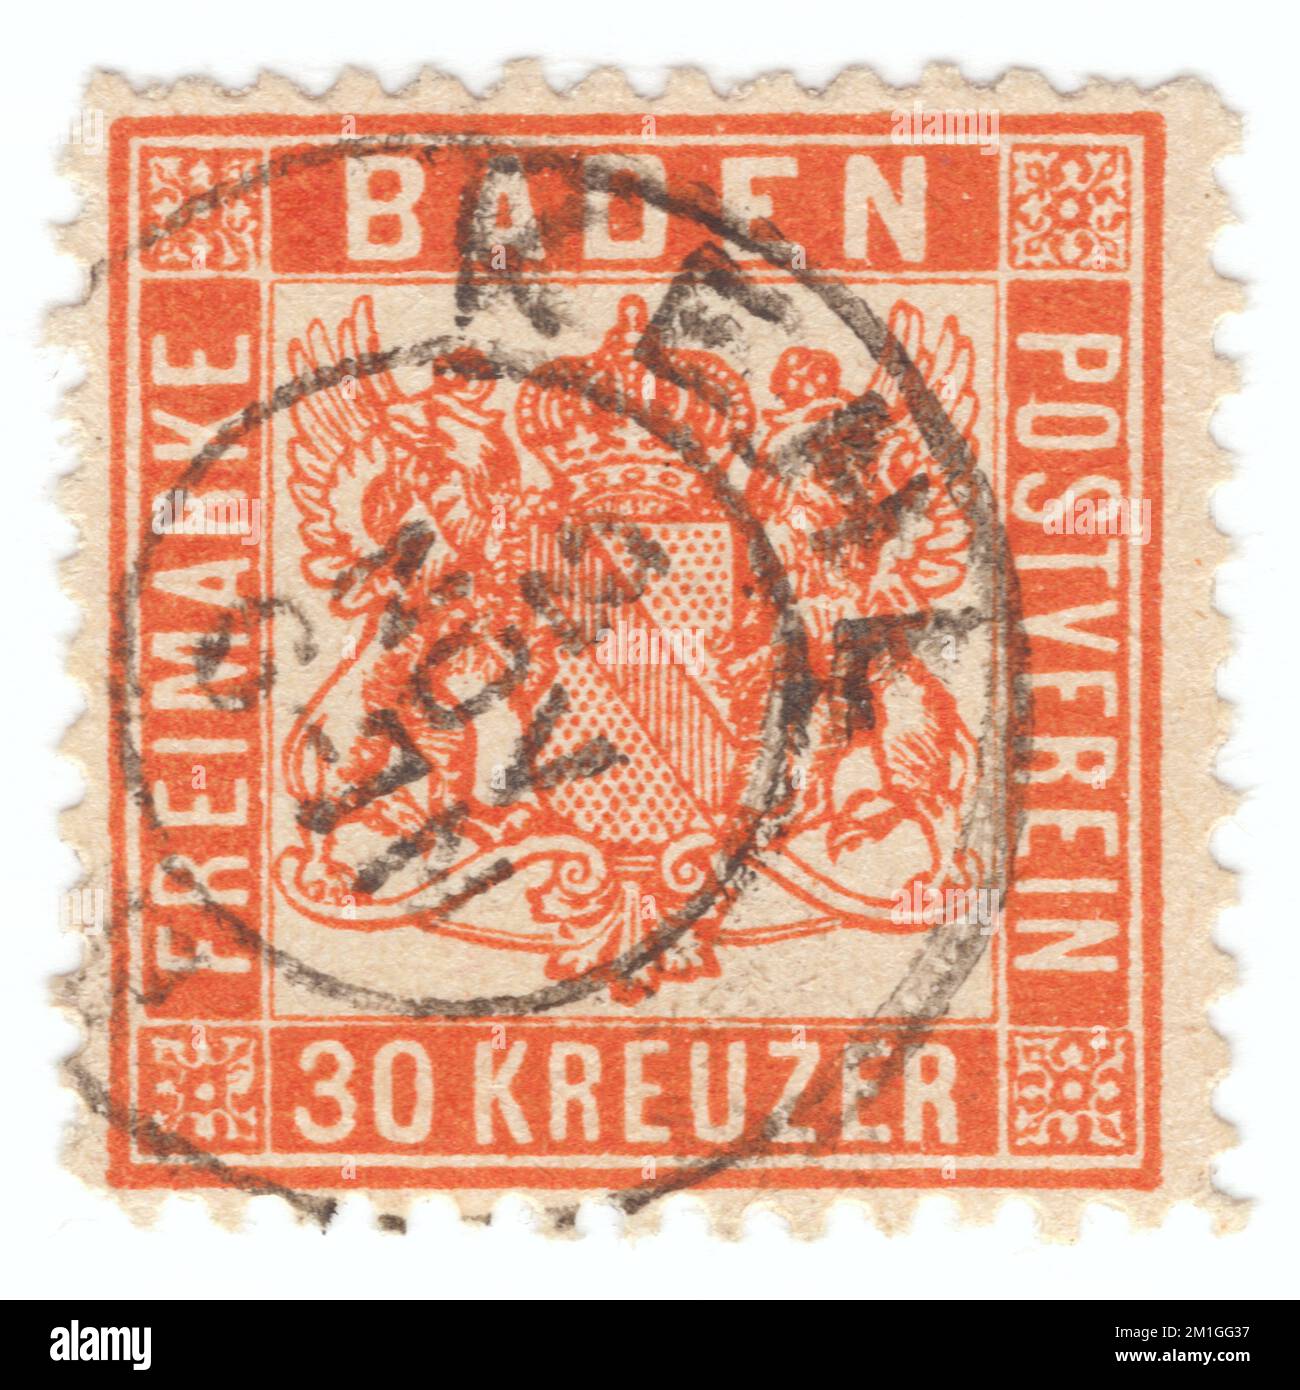 BADEN (einer der deutschen Bundesstaaten) — 1862: Ursprünglich verwendeter, tieforangefarbener Briefstempel mit 30 Kreuzer, der ein Gewehr mit unschattiertem Hintergrund zeigt Stockfoto